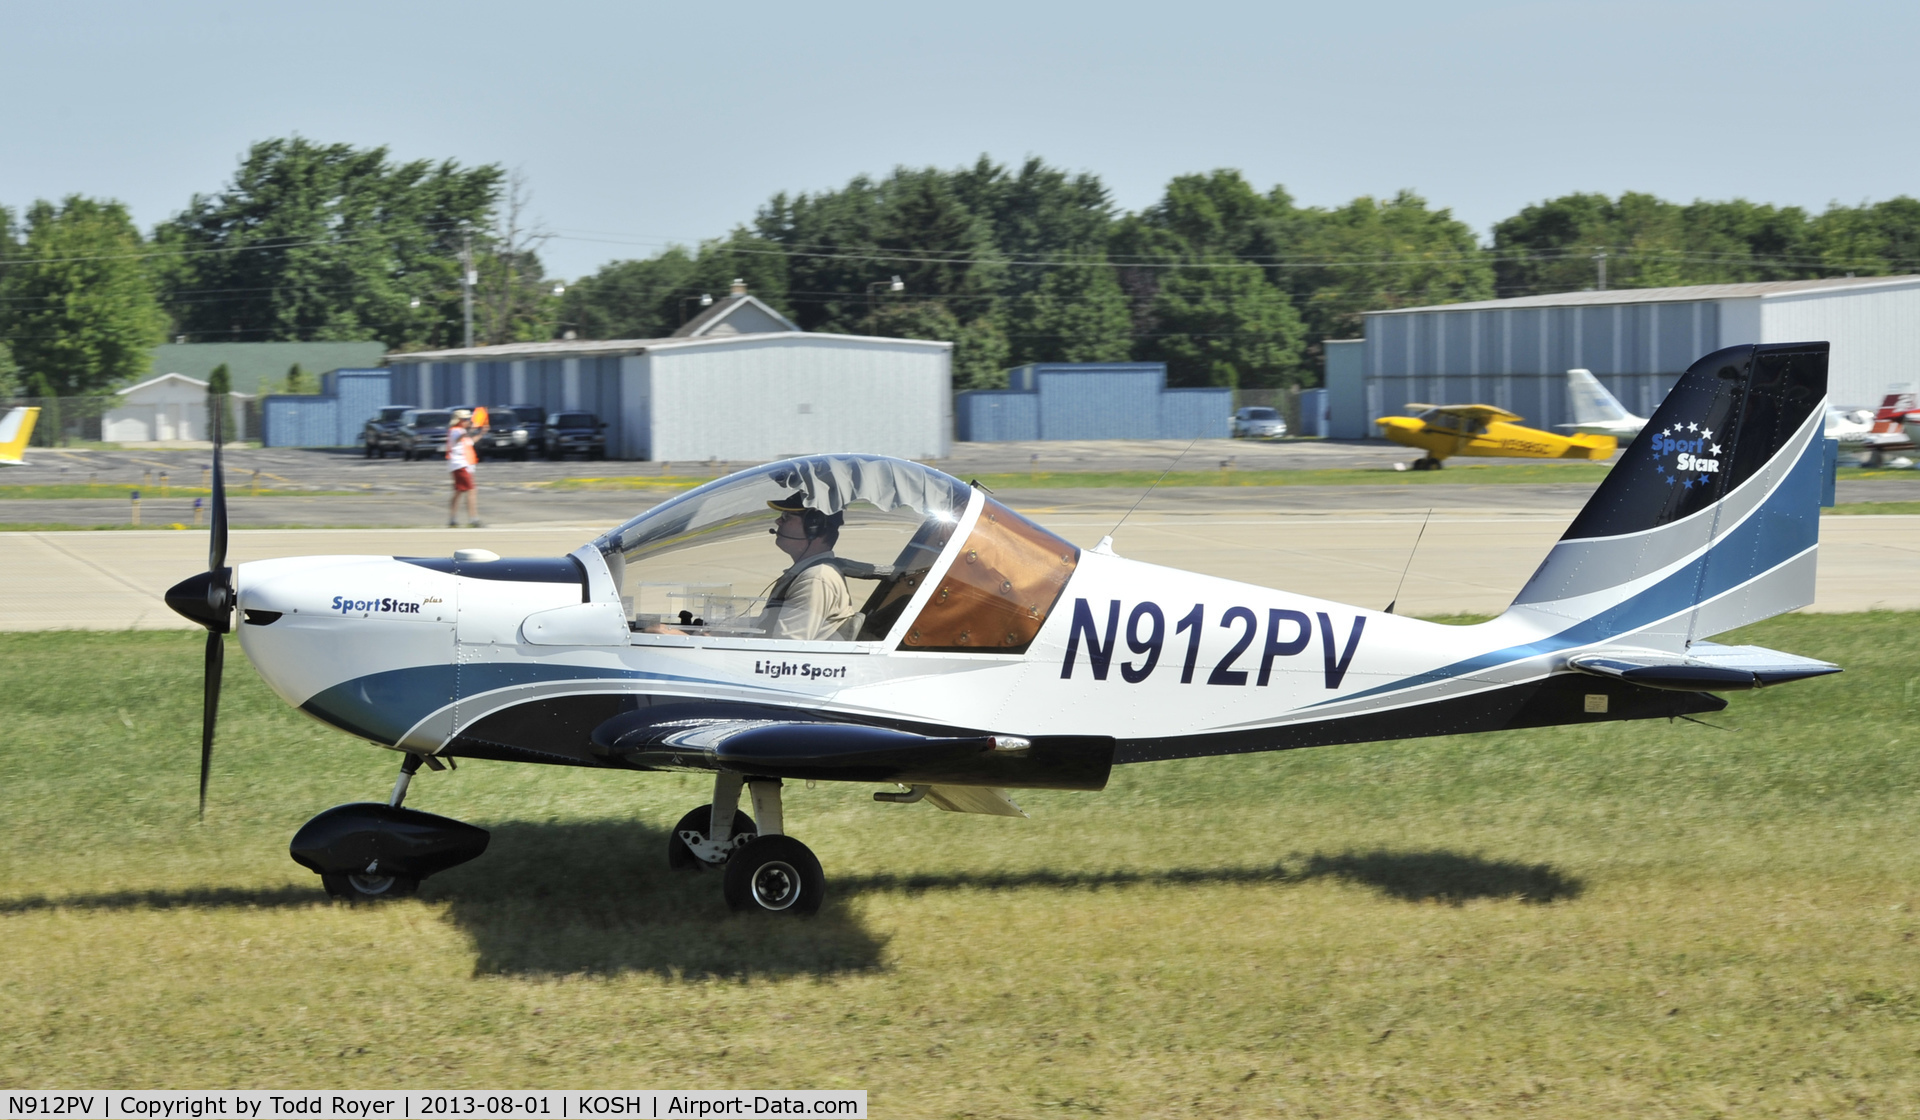 N912PV, 2006 Evektor-Aerotechnik Sportstar C/N 20060708, Airventure 2013